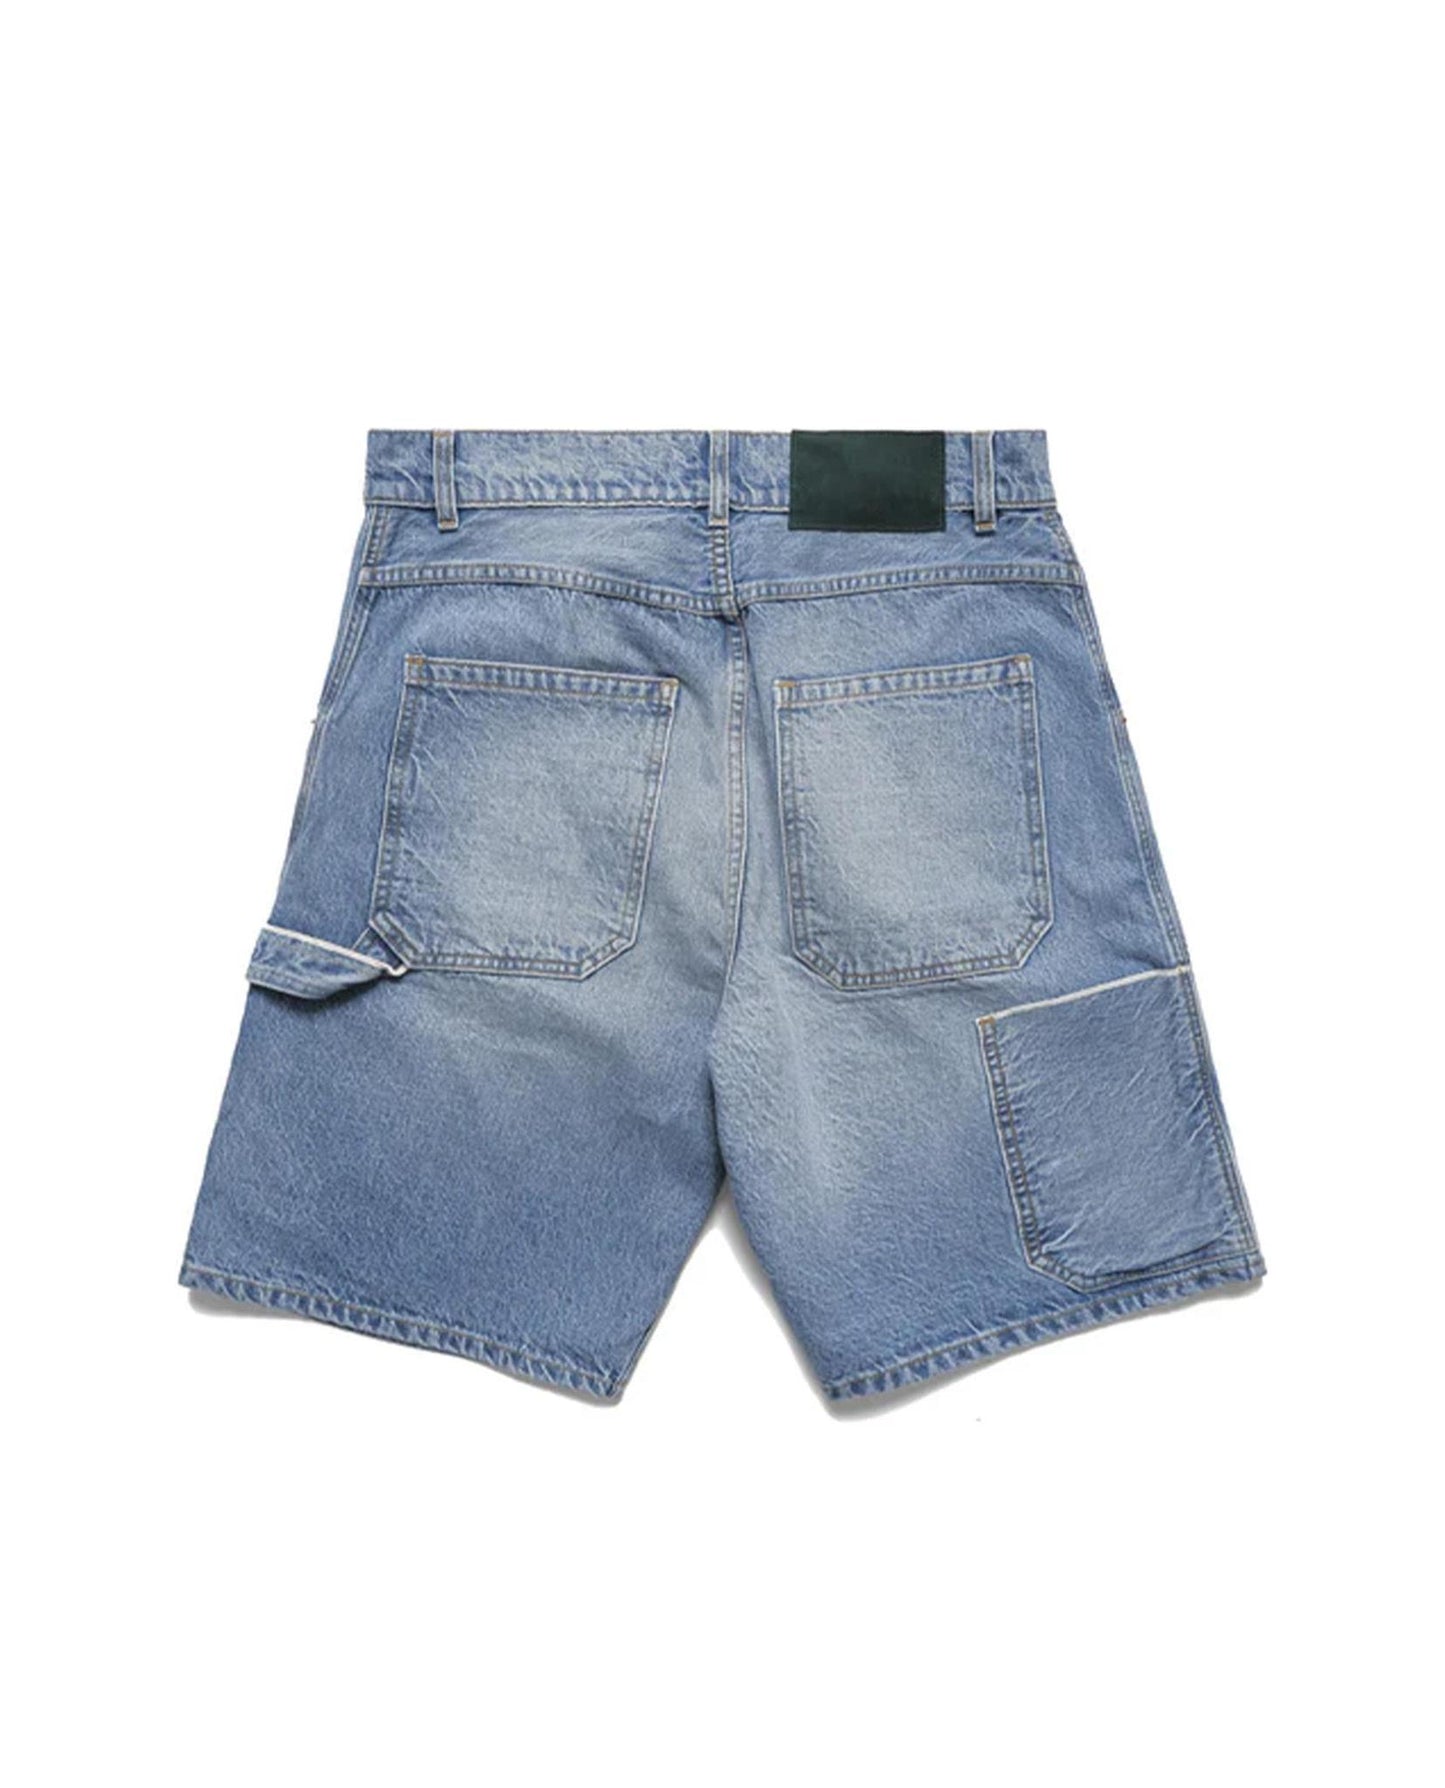 
                    
                      BTFL Carpenter Shorts
                    
                  